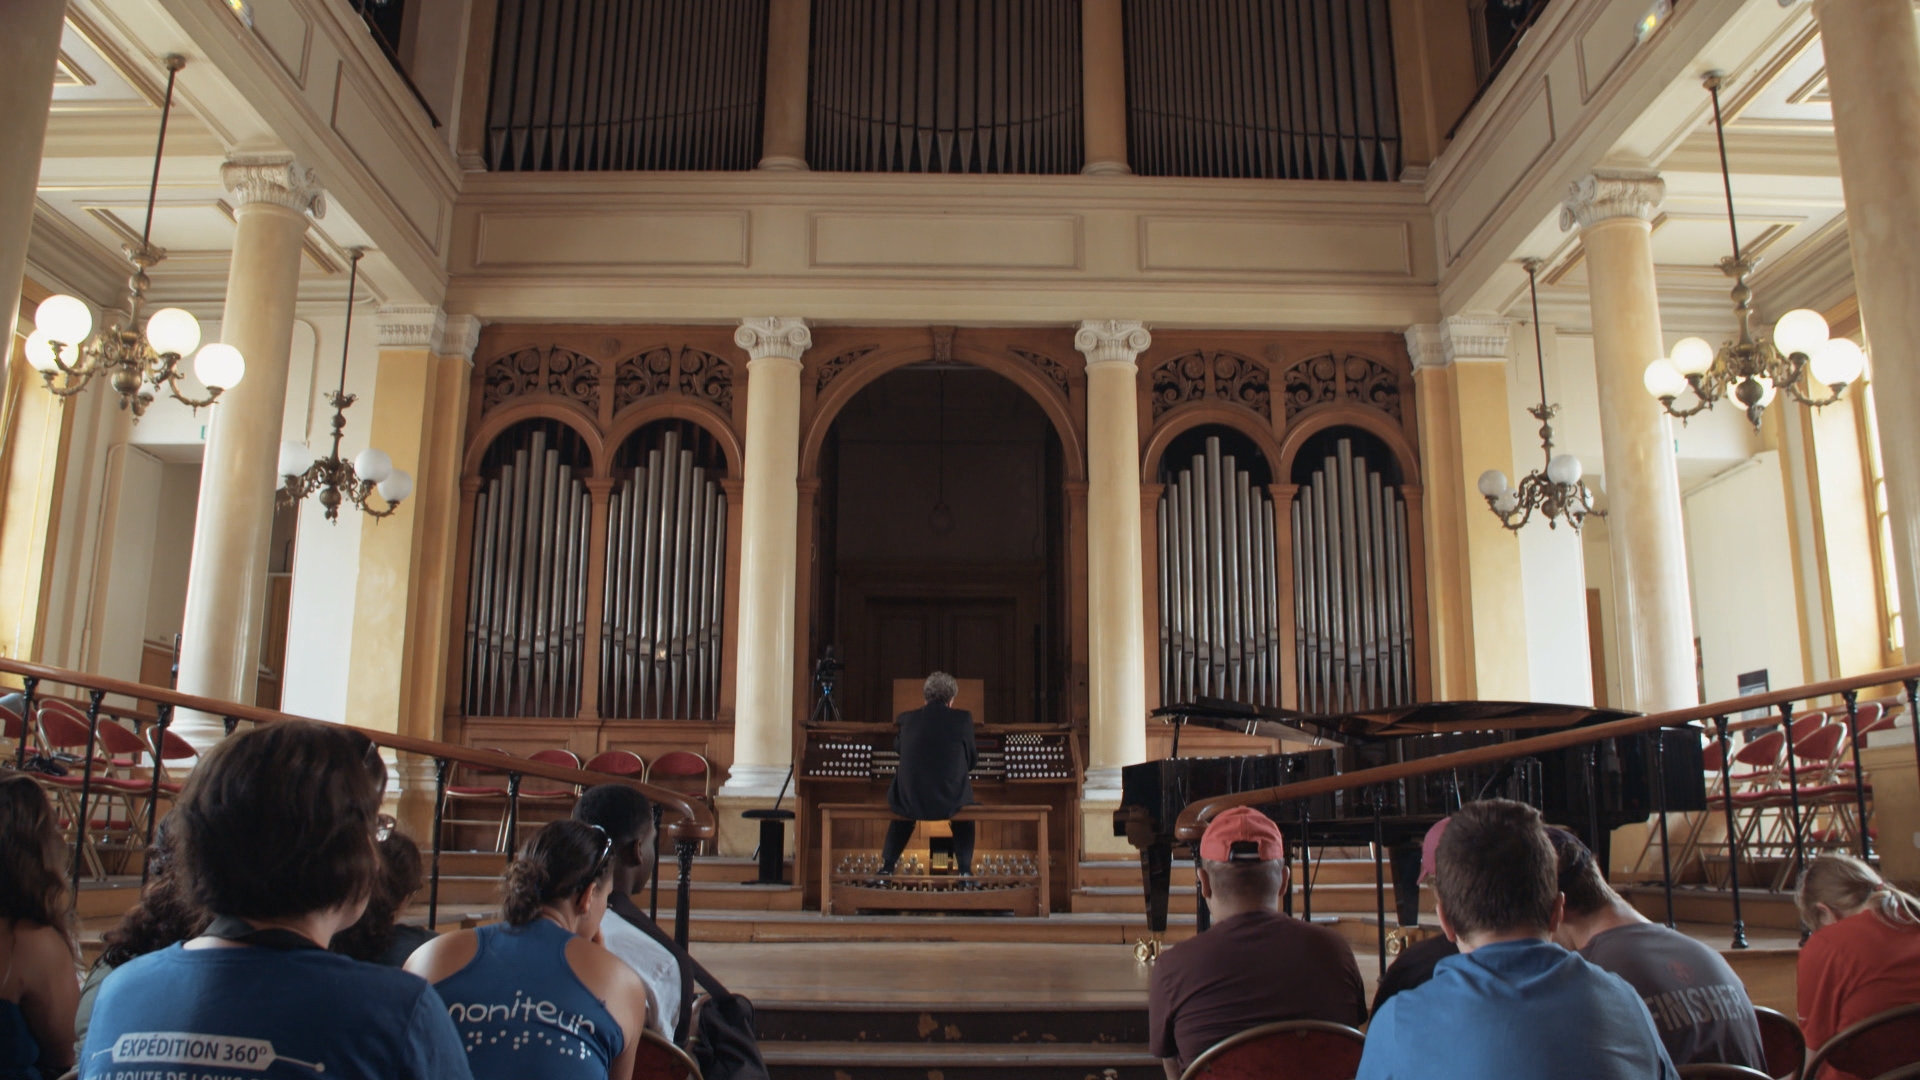 Le groupe assiste à un récital d’orgue